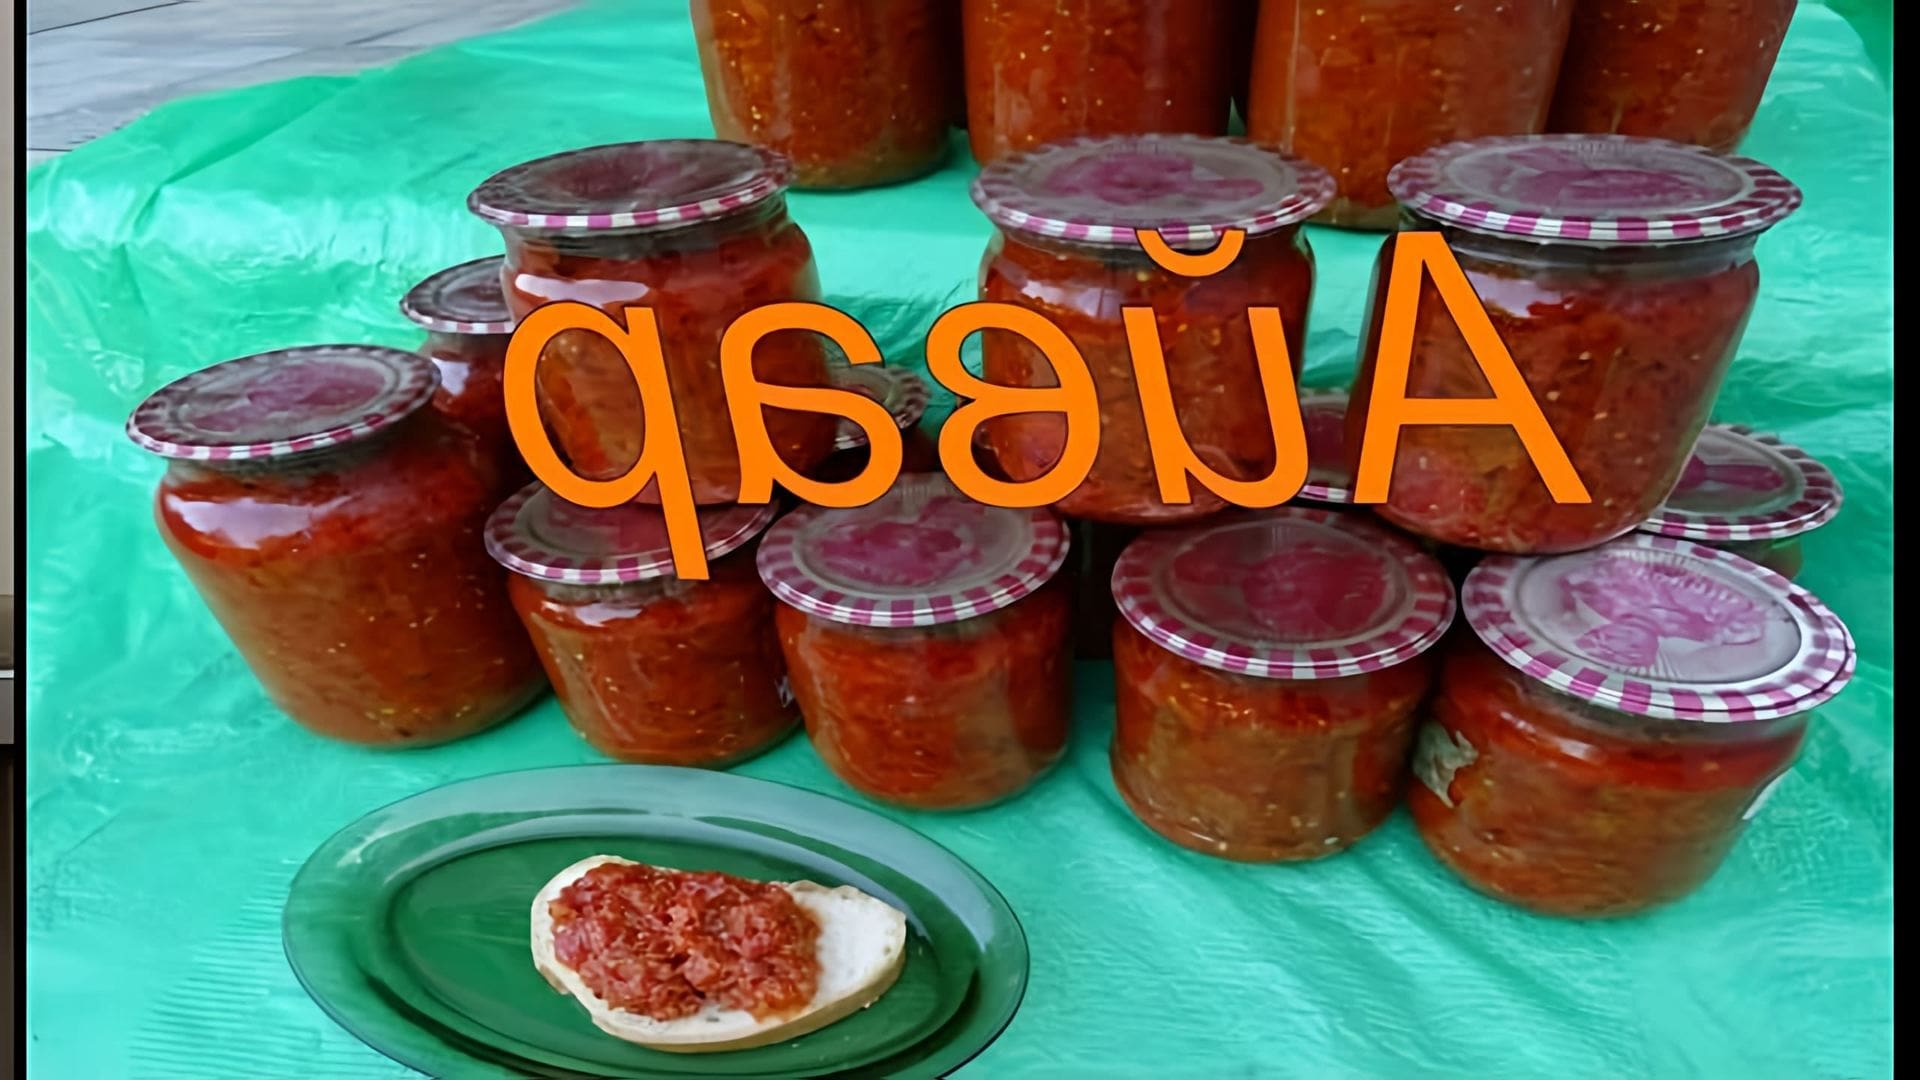 В этом видео демонстрируется процесс приготовления айвара - балканского блюда из запеченных перца и баклажанов